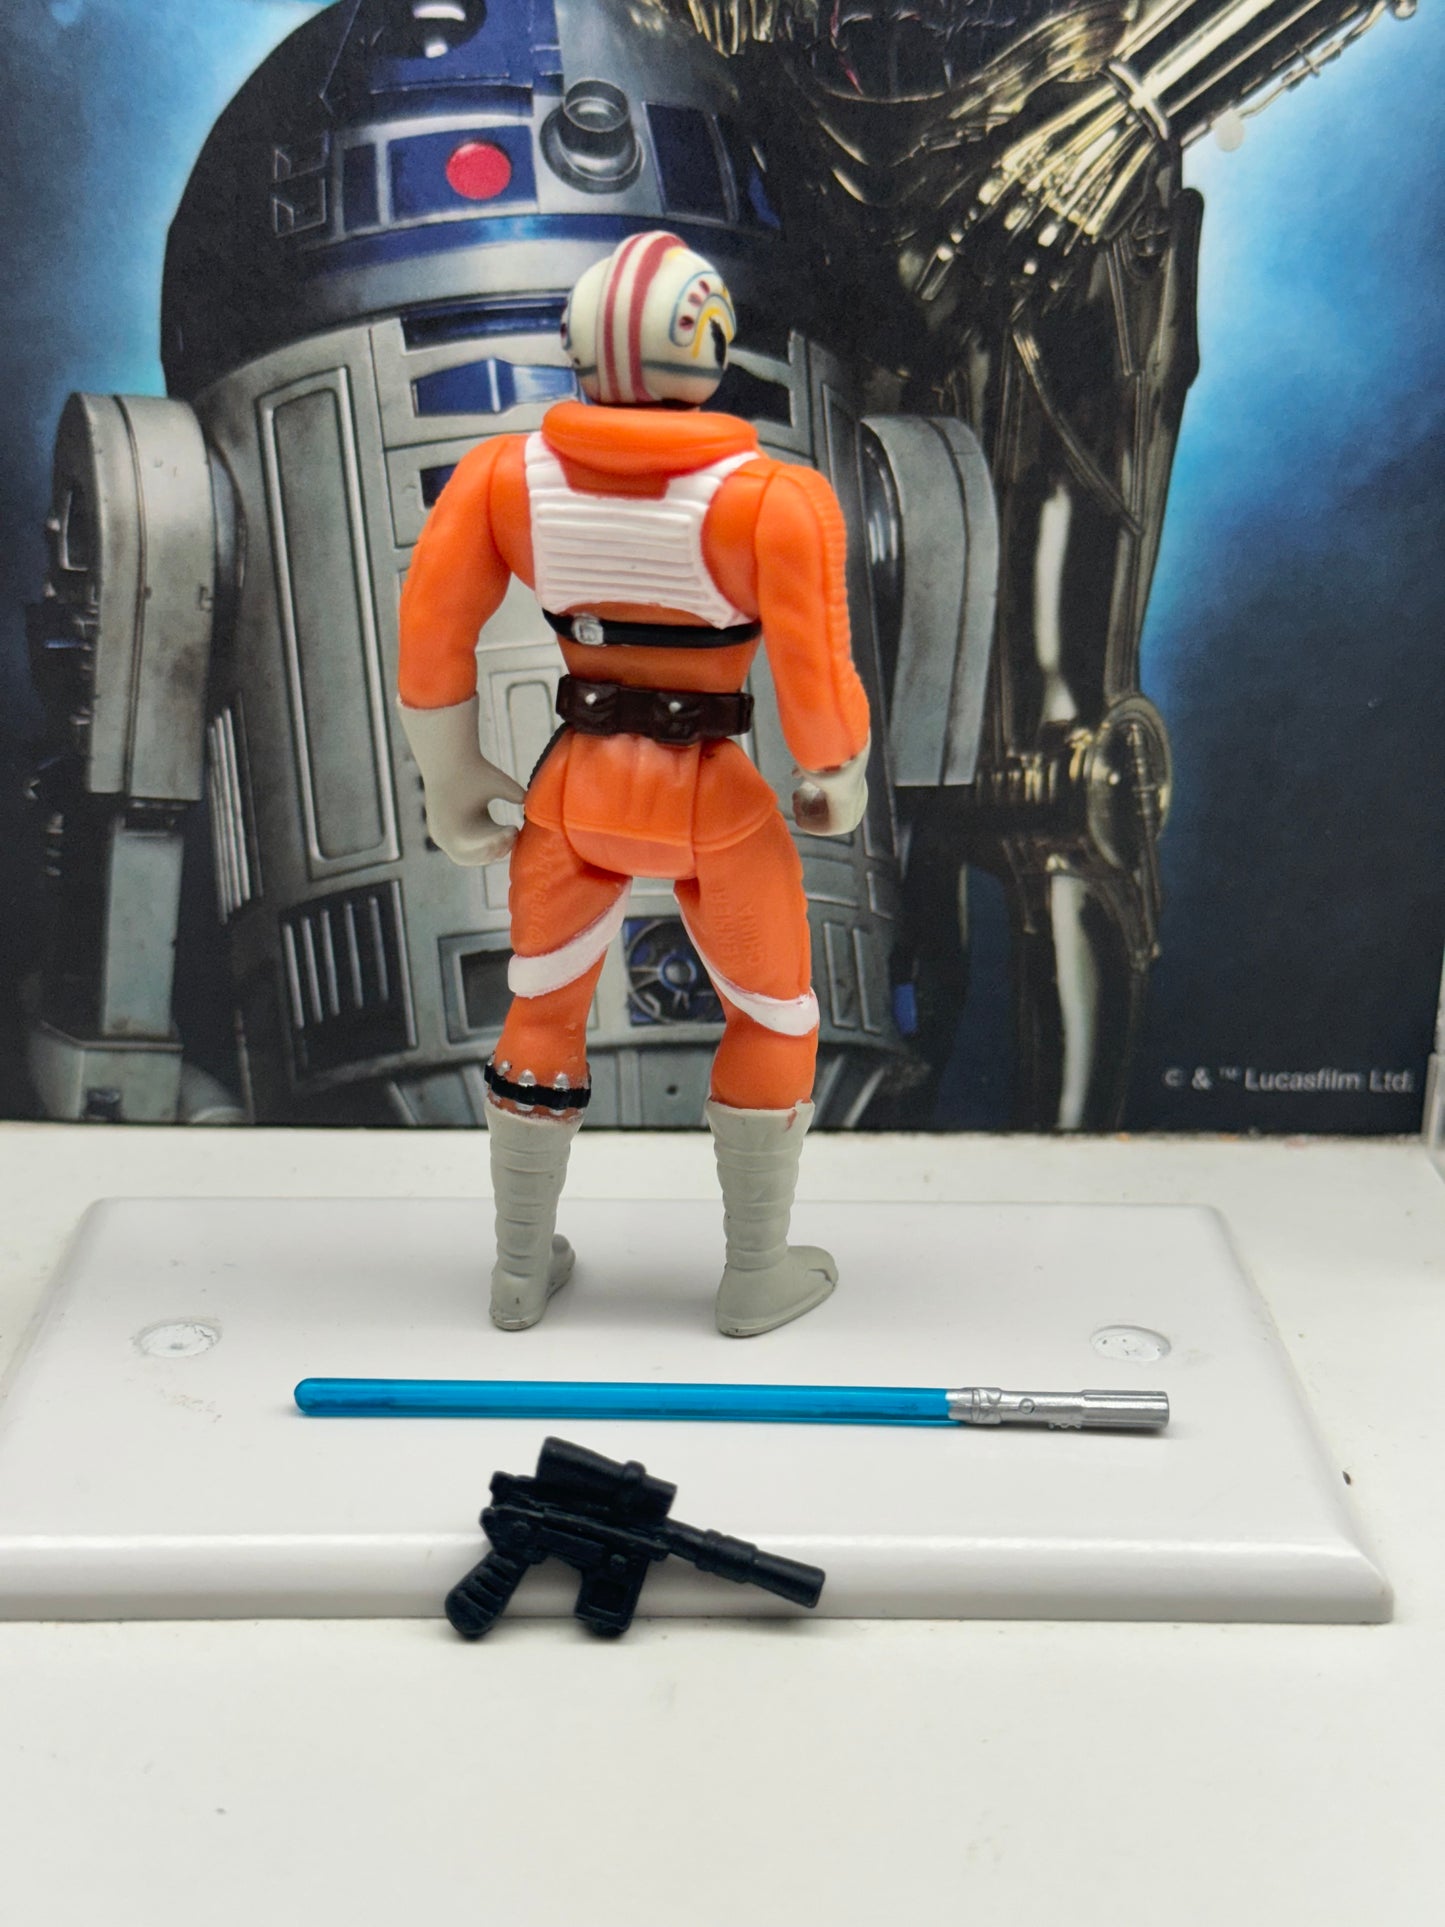 Star Wars POTF2 Empire Strikes Back Luke Skywalker X-Wing Fighter Pilot gear